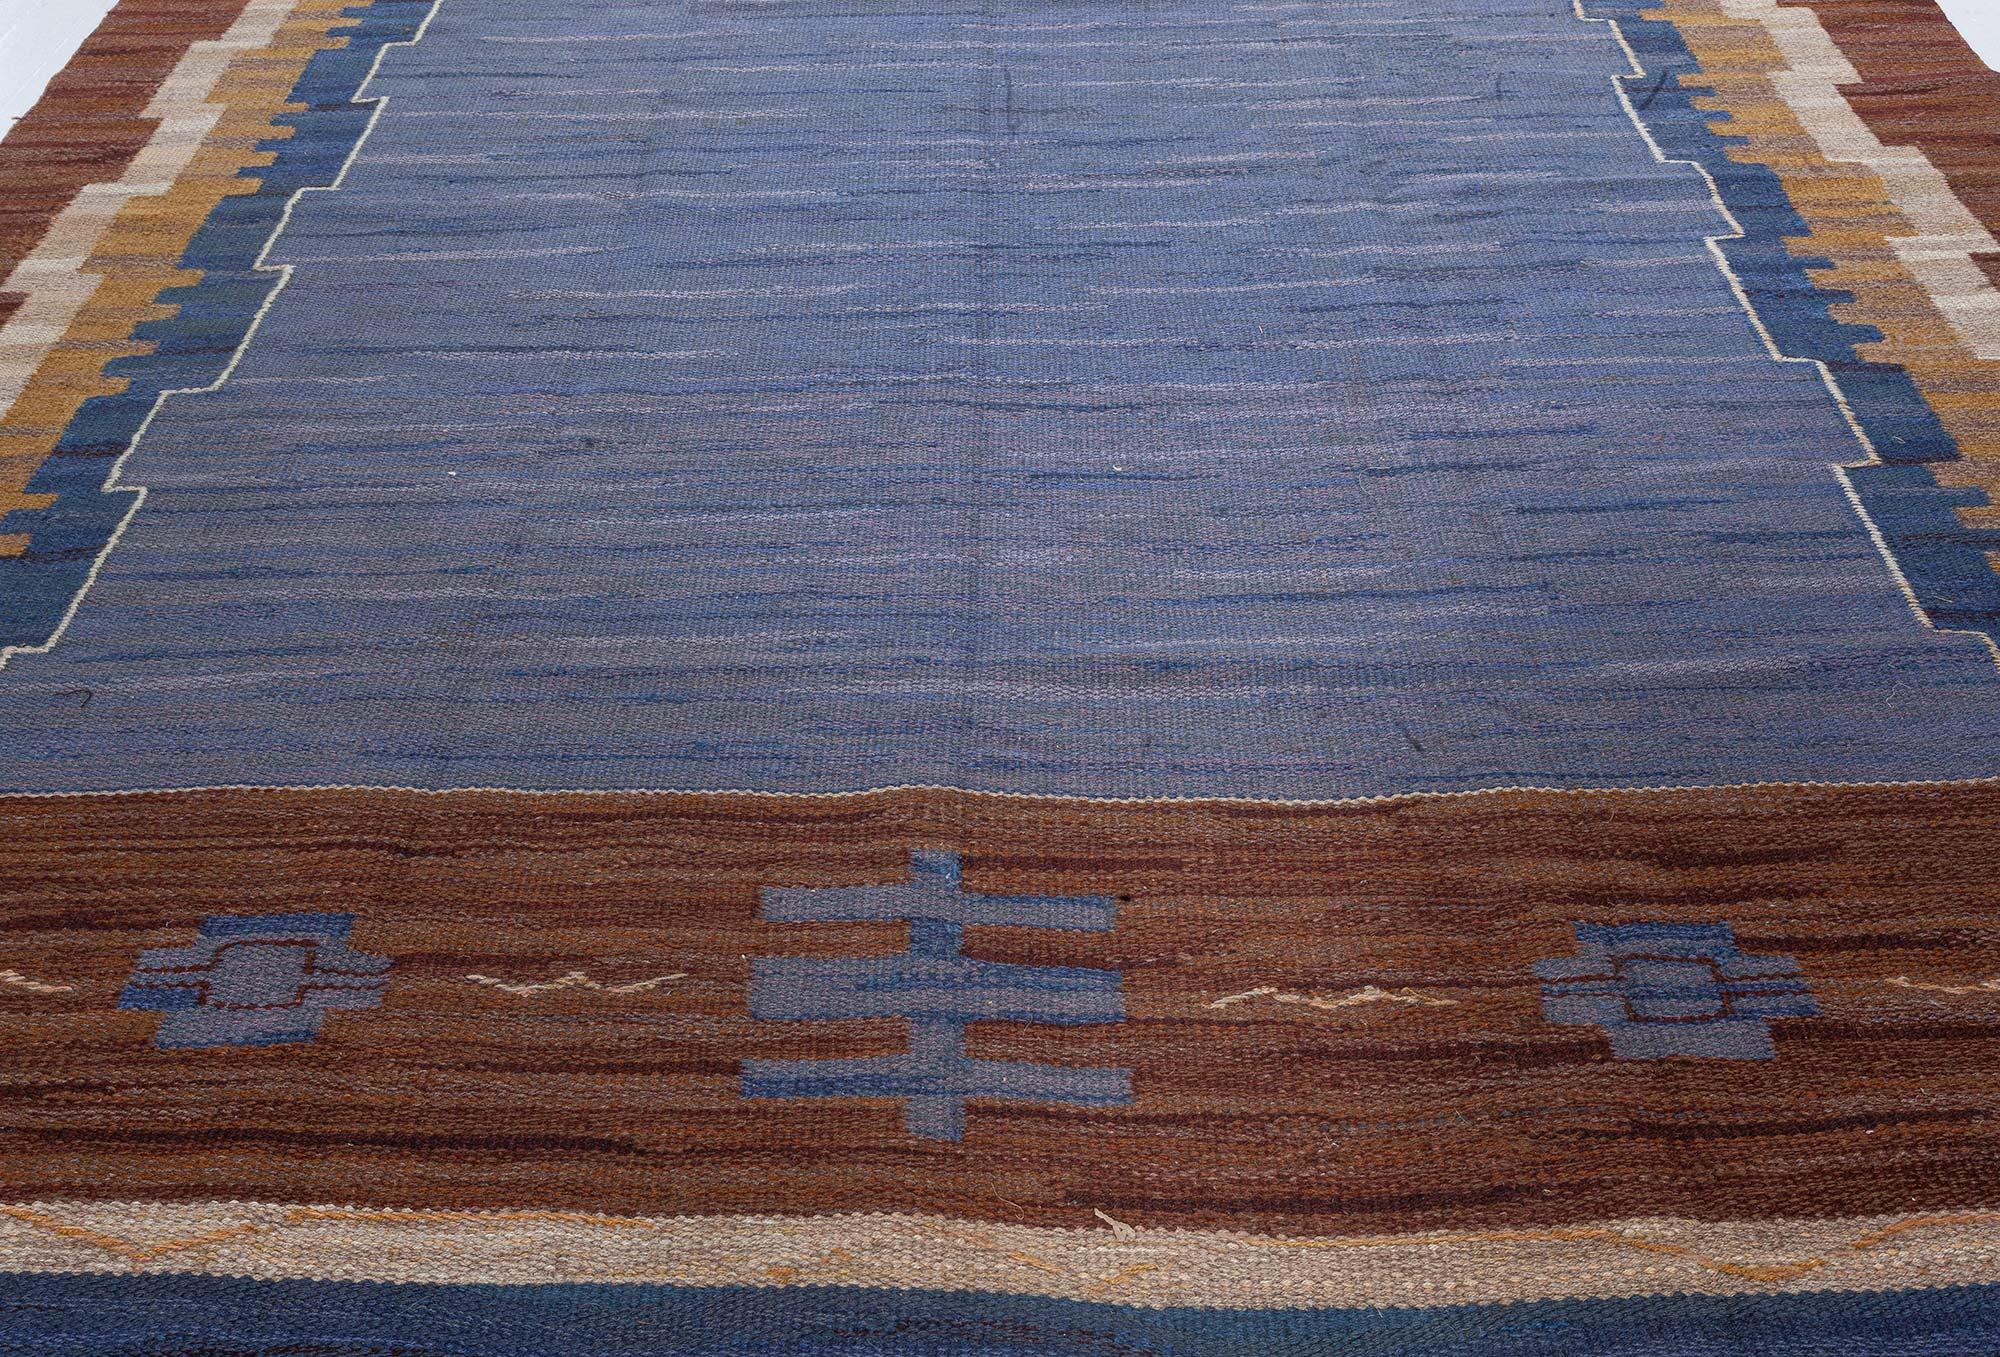 Vintage Swedish Flat Woven Rug by Johanna Bruns Vavskola
Size: 7'3